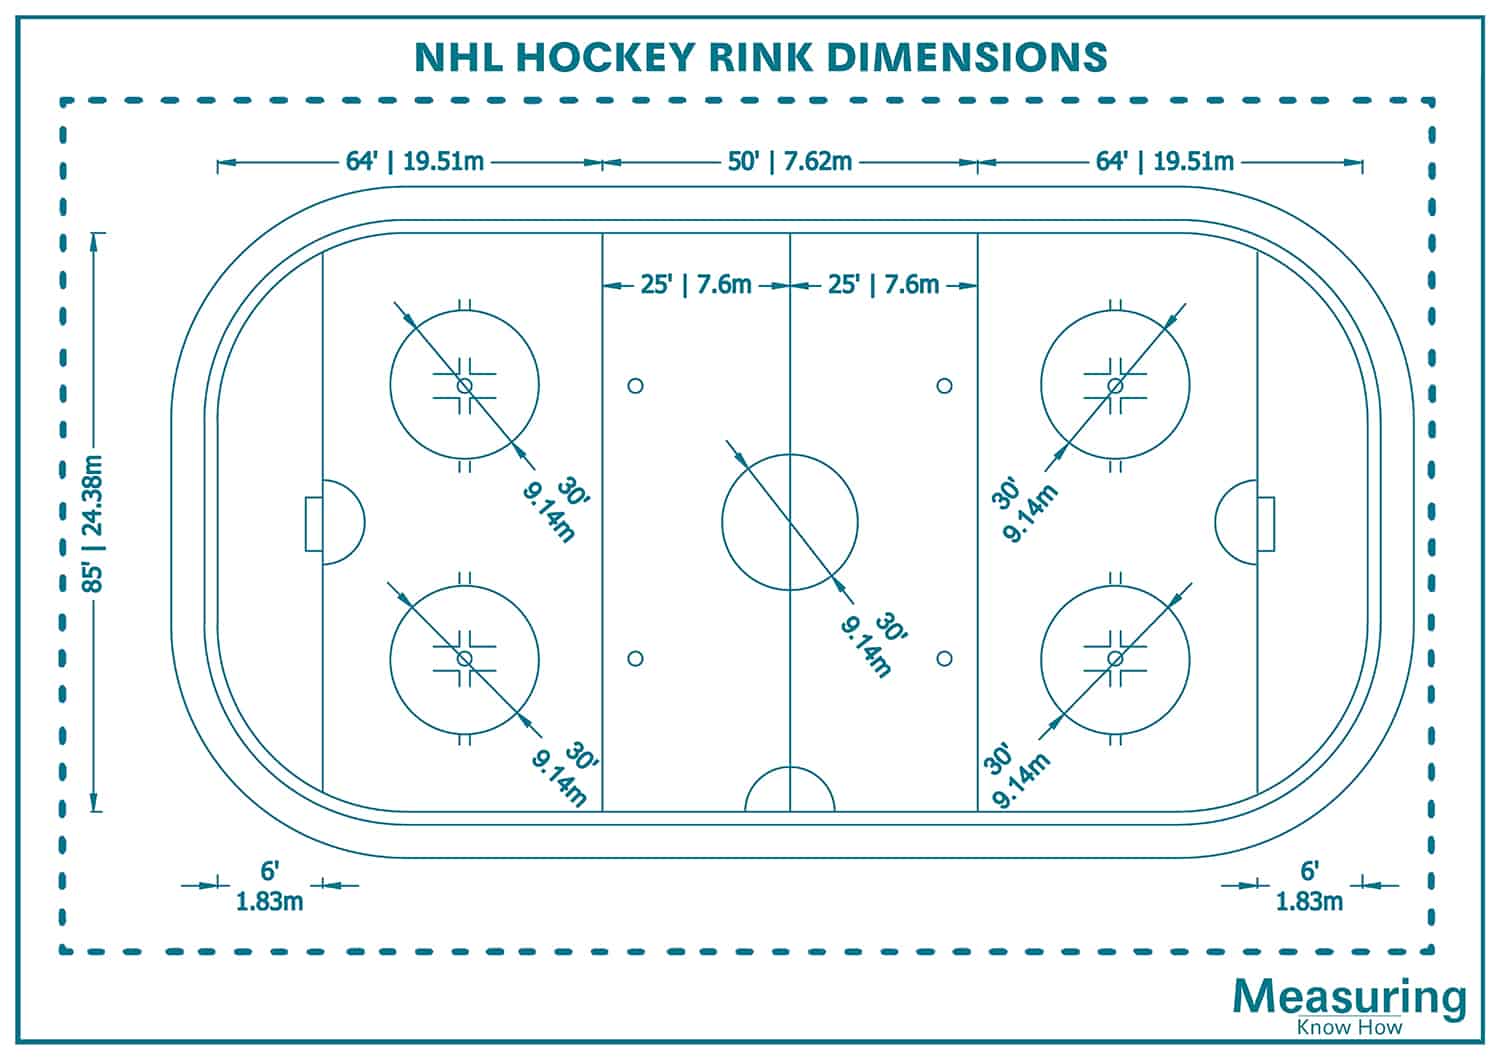 NHL hockey rink dimensions